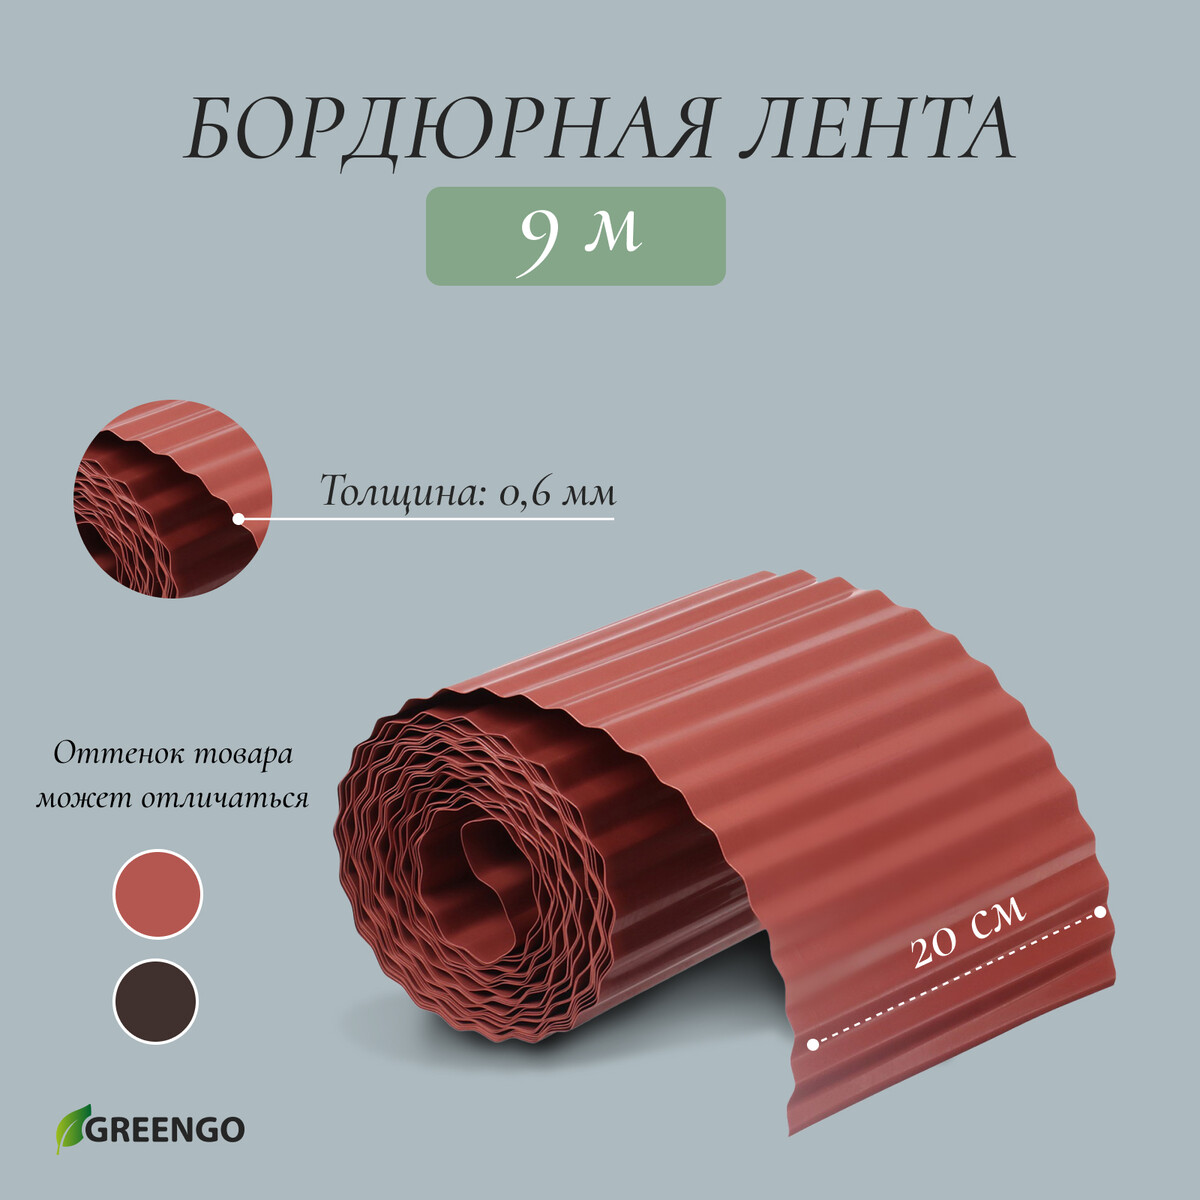 Лента бордюрная, 0.2 × 9 м, толщина 0.6 мм, пластиковая, гофра, темно-коричневая, greengo